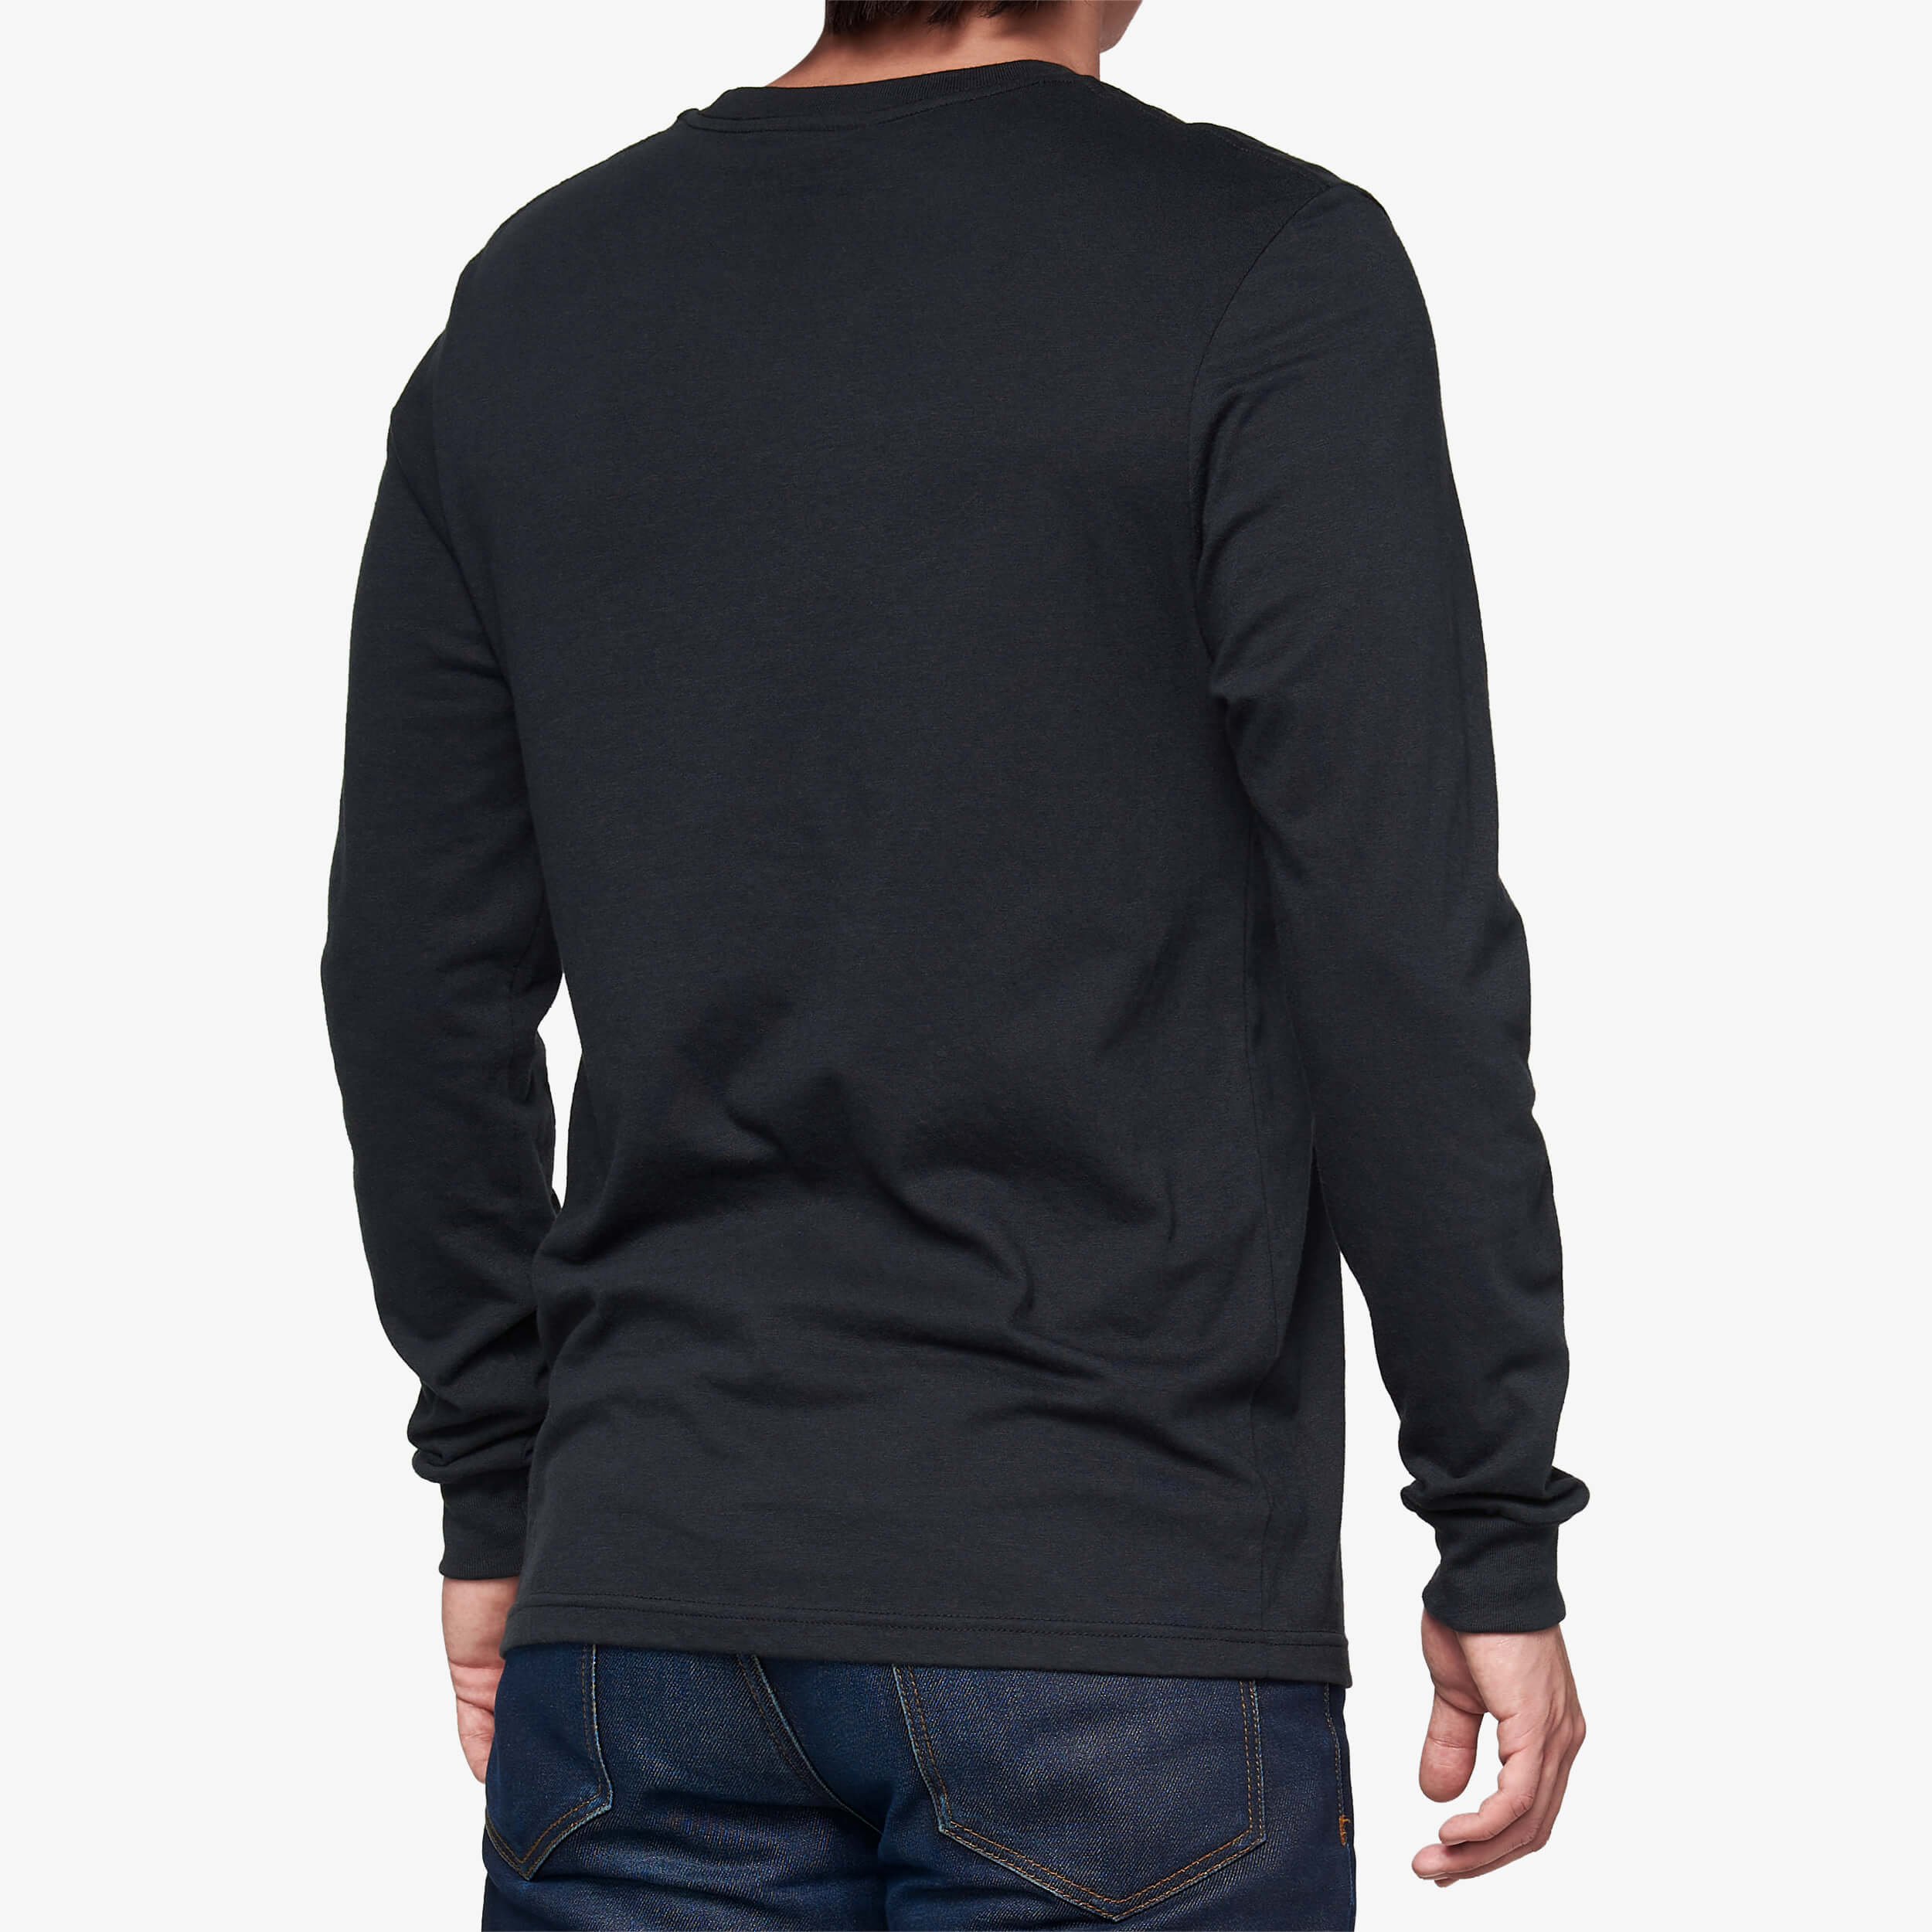 BB33 Long Sleeve T-Shirt Black - Secondary